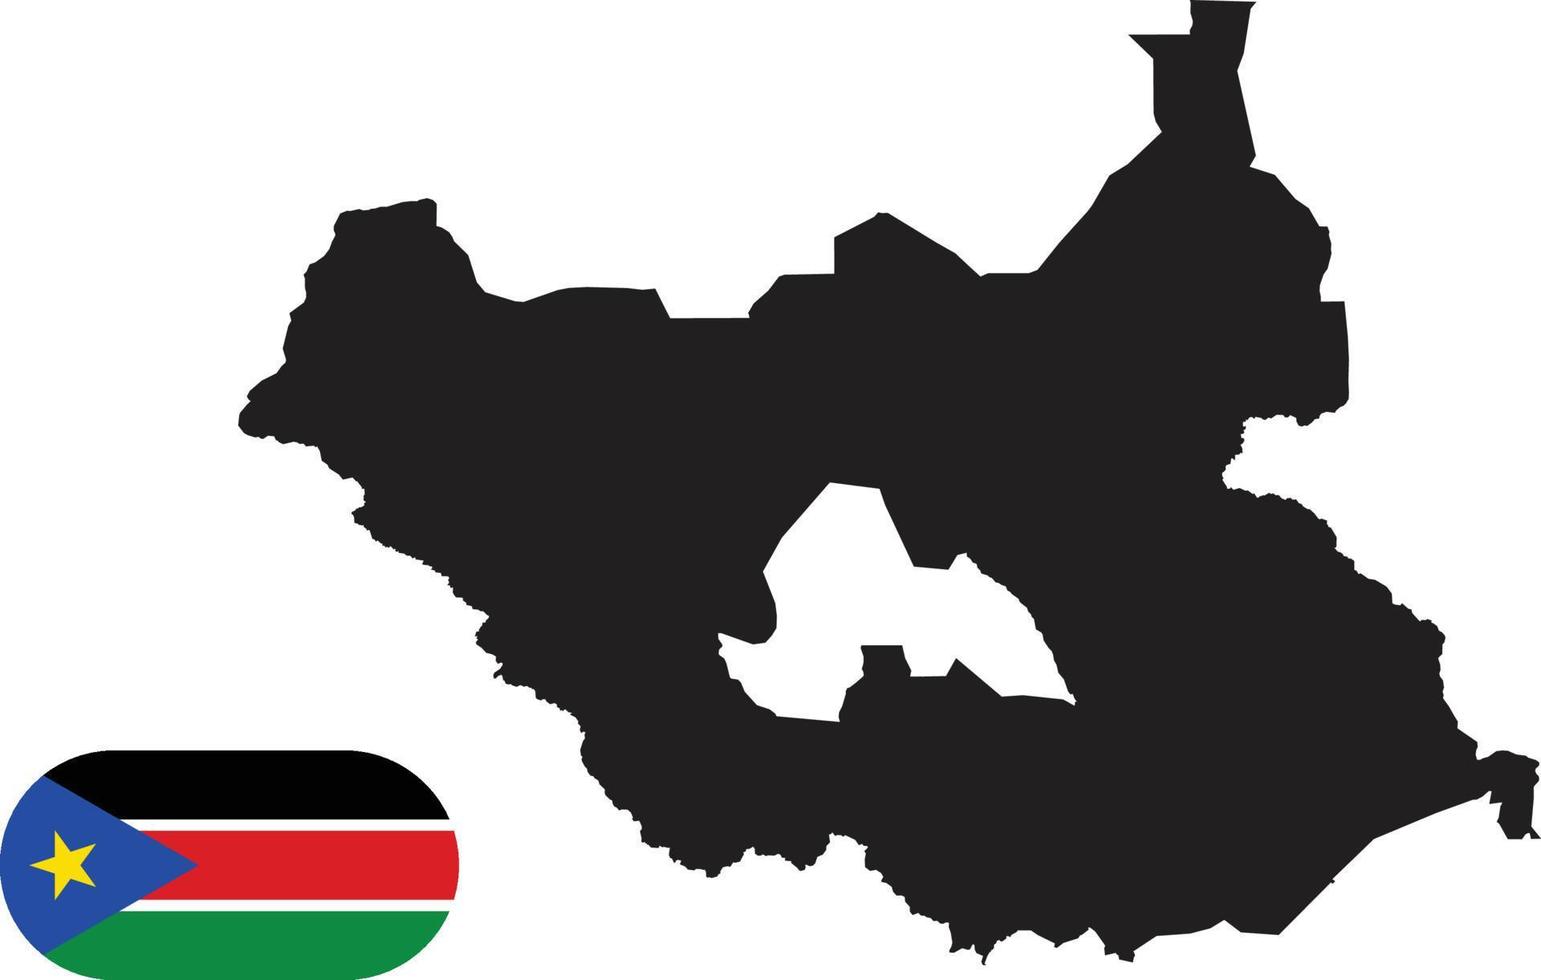 mapa y bandera de sudán del sur vector